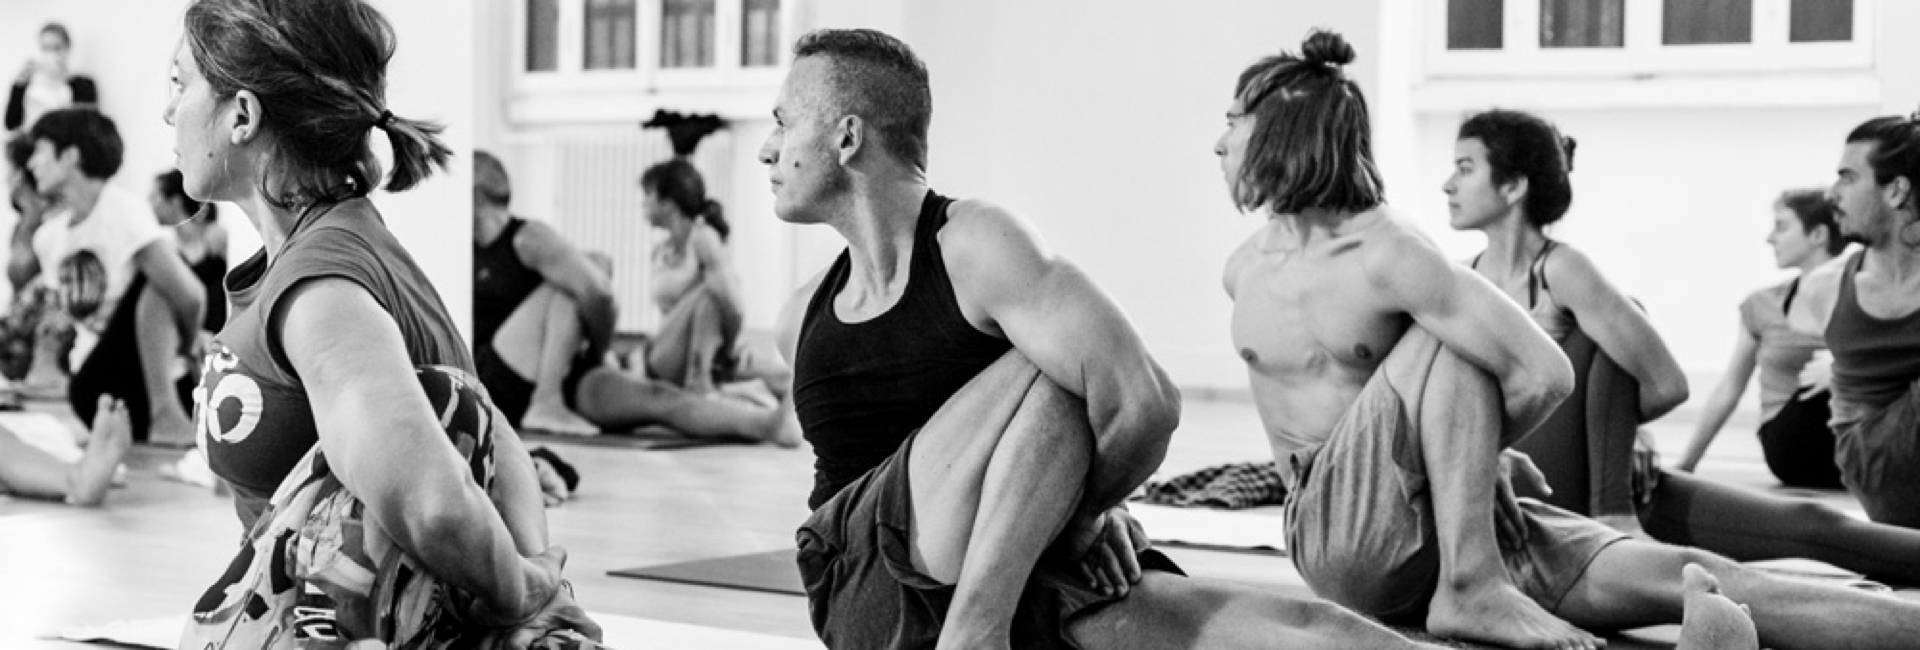 Istruttori Yoga ashtanga yoga monza e brianza